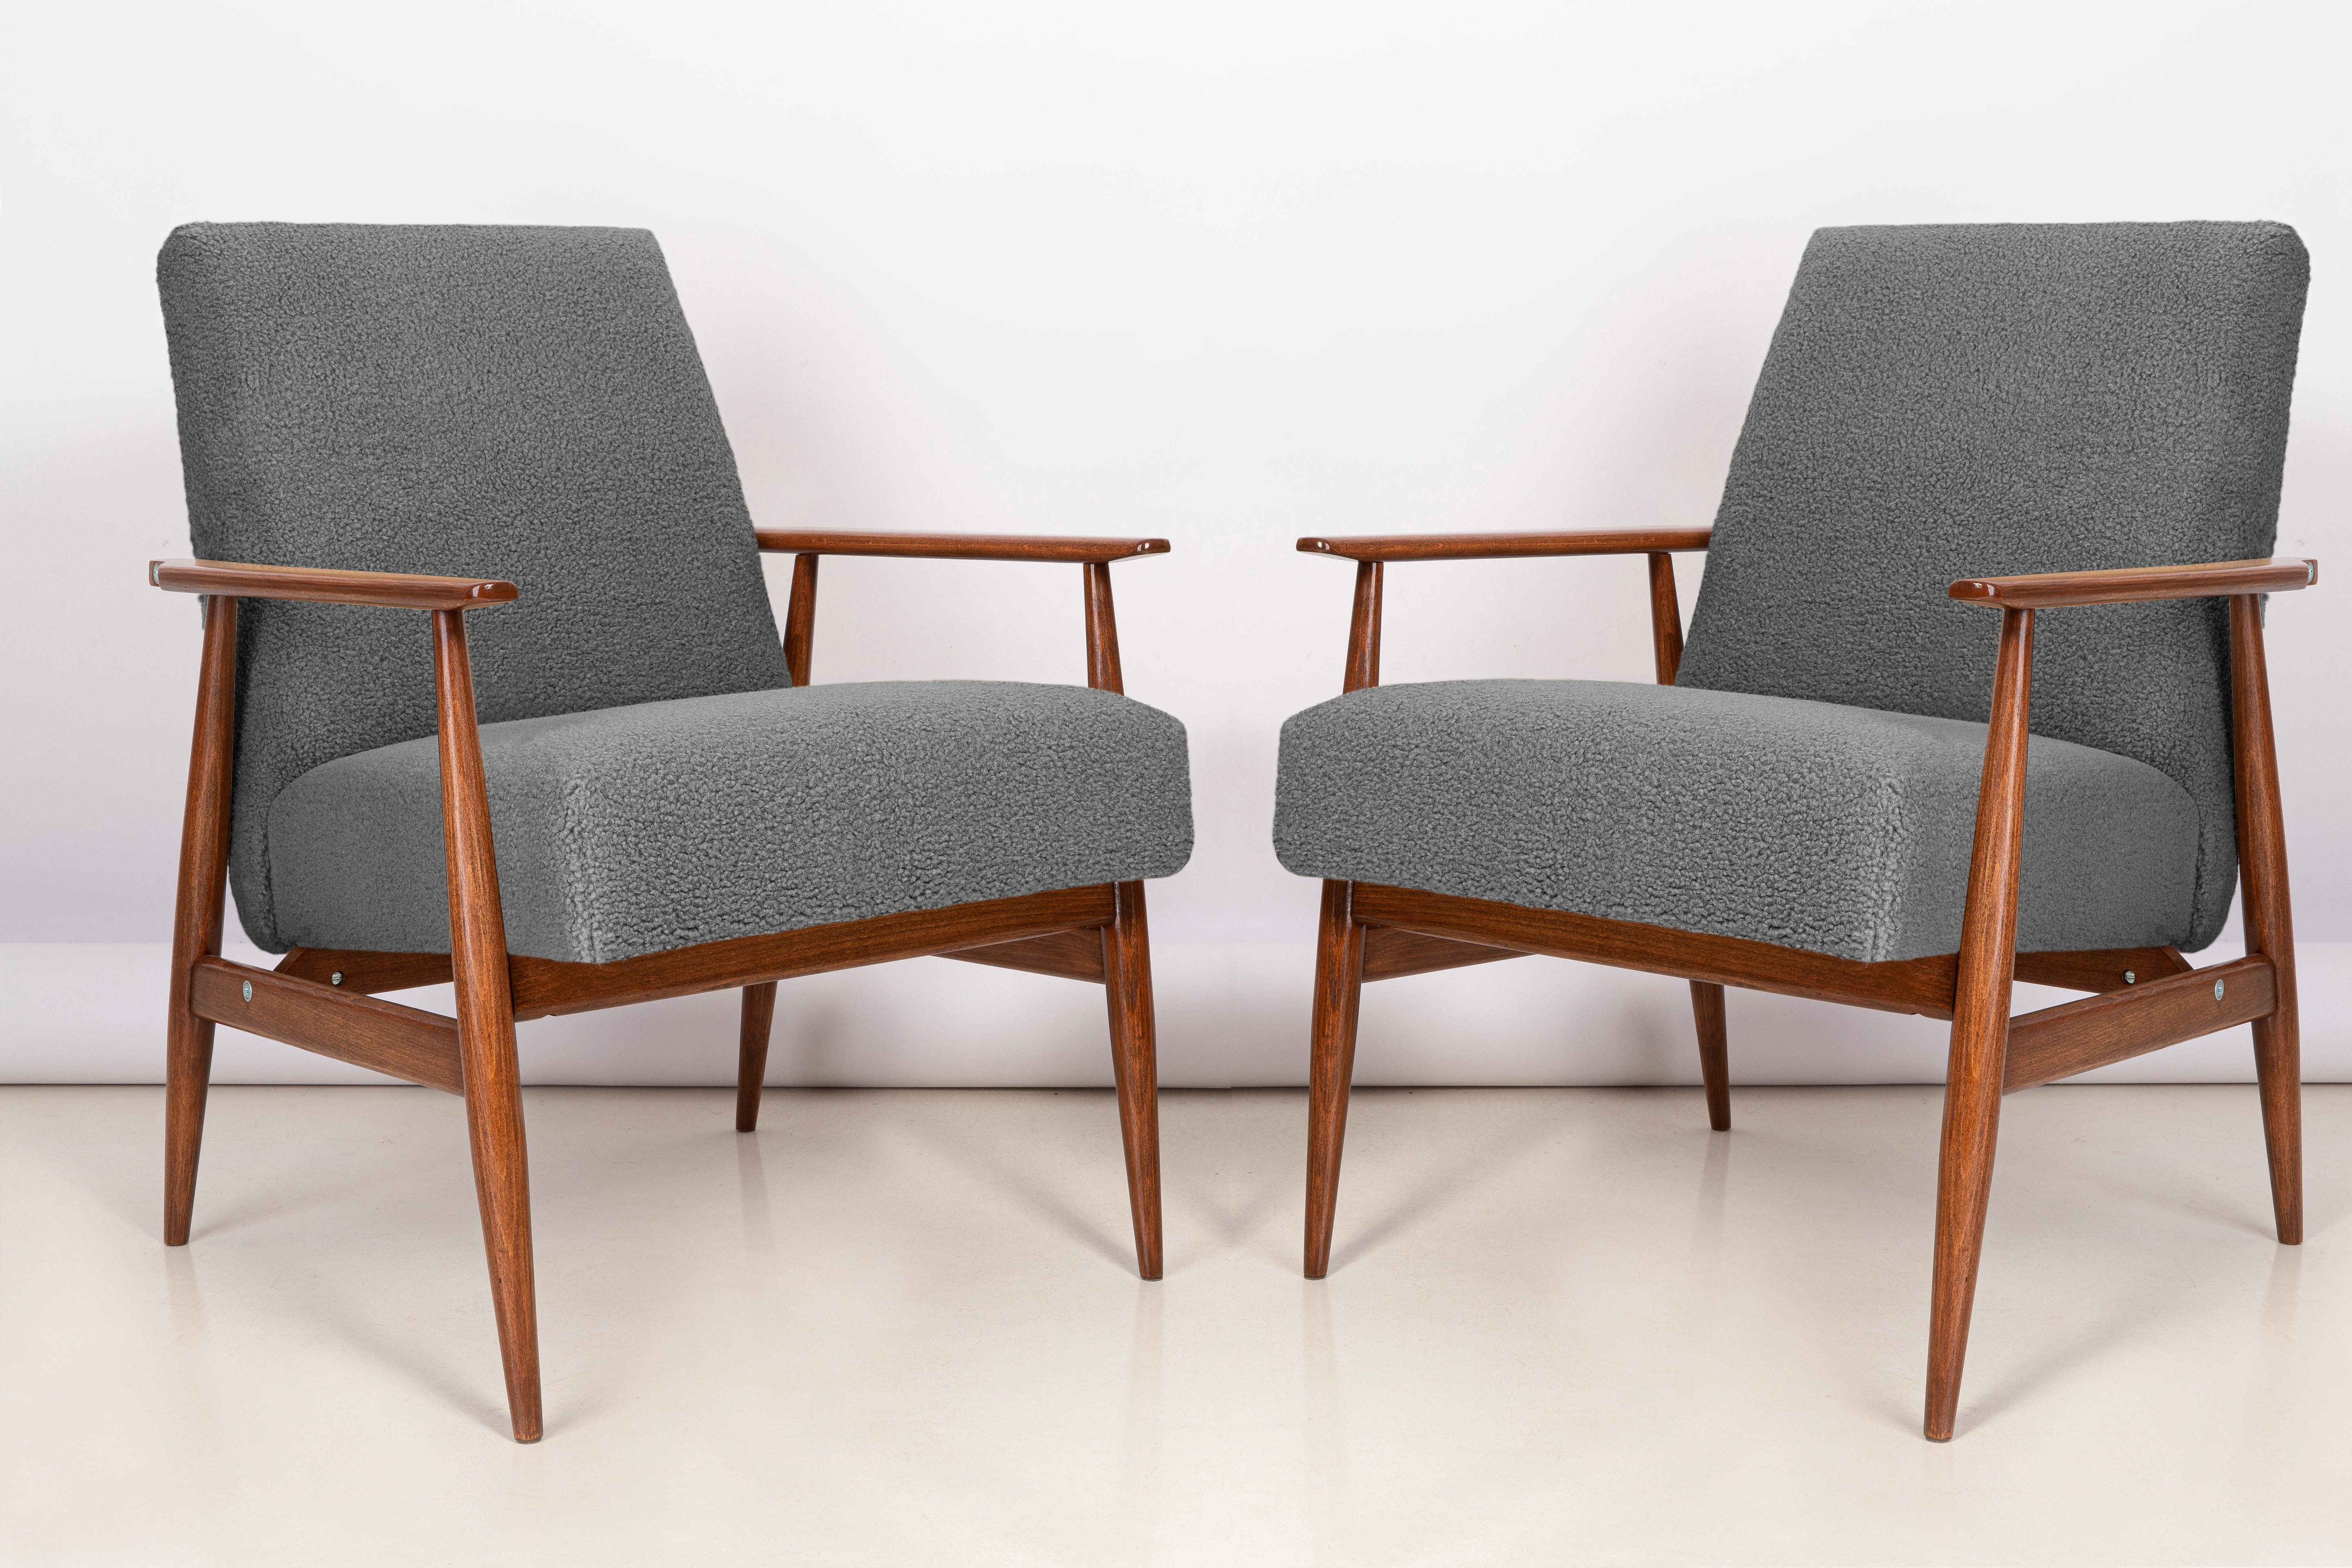 Une paire de fauteuils en bouclé gris, conçus par Henryk Lis dans les années 1960. Meubles après une rénovation professionnelle complète de la menuiserie et de la tapisserie. Les fauteuils seront parfaits dans les espaces minimalistes, tant privés